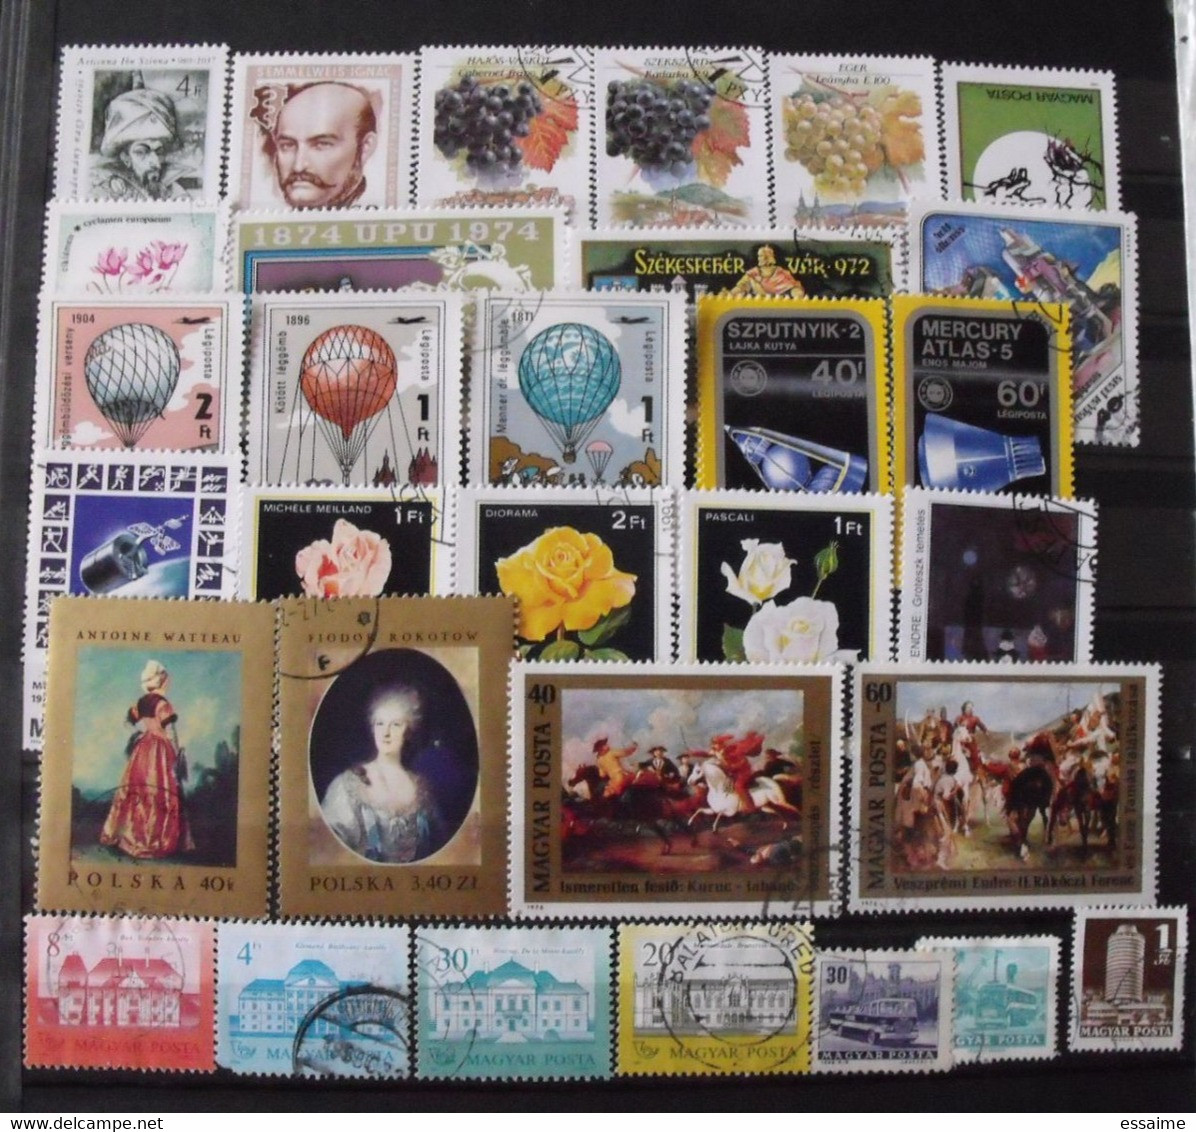 Hongrie Magyar. collection de 460 timbres oblitérés (quelques neufs)